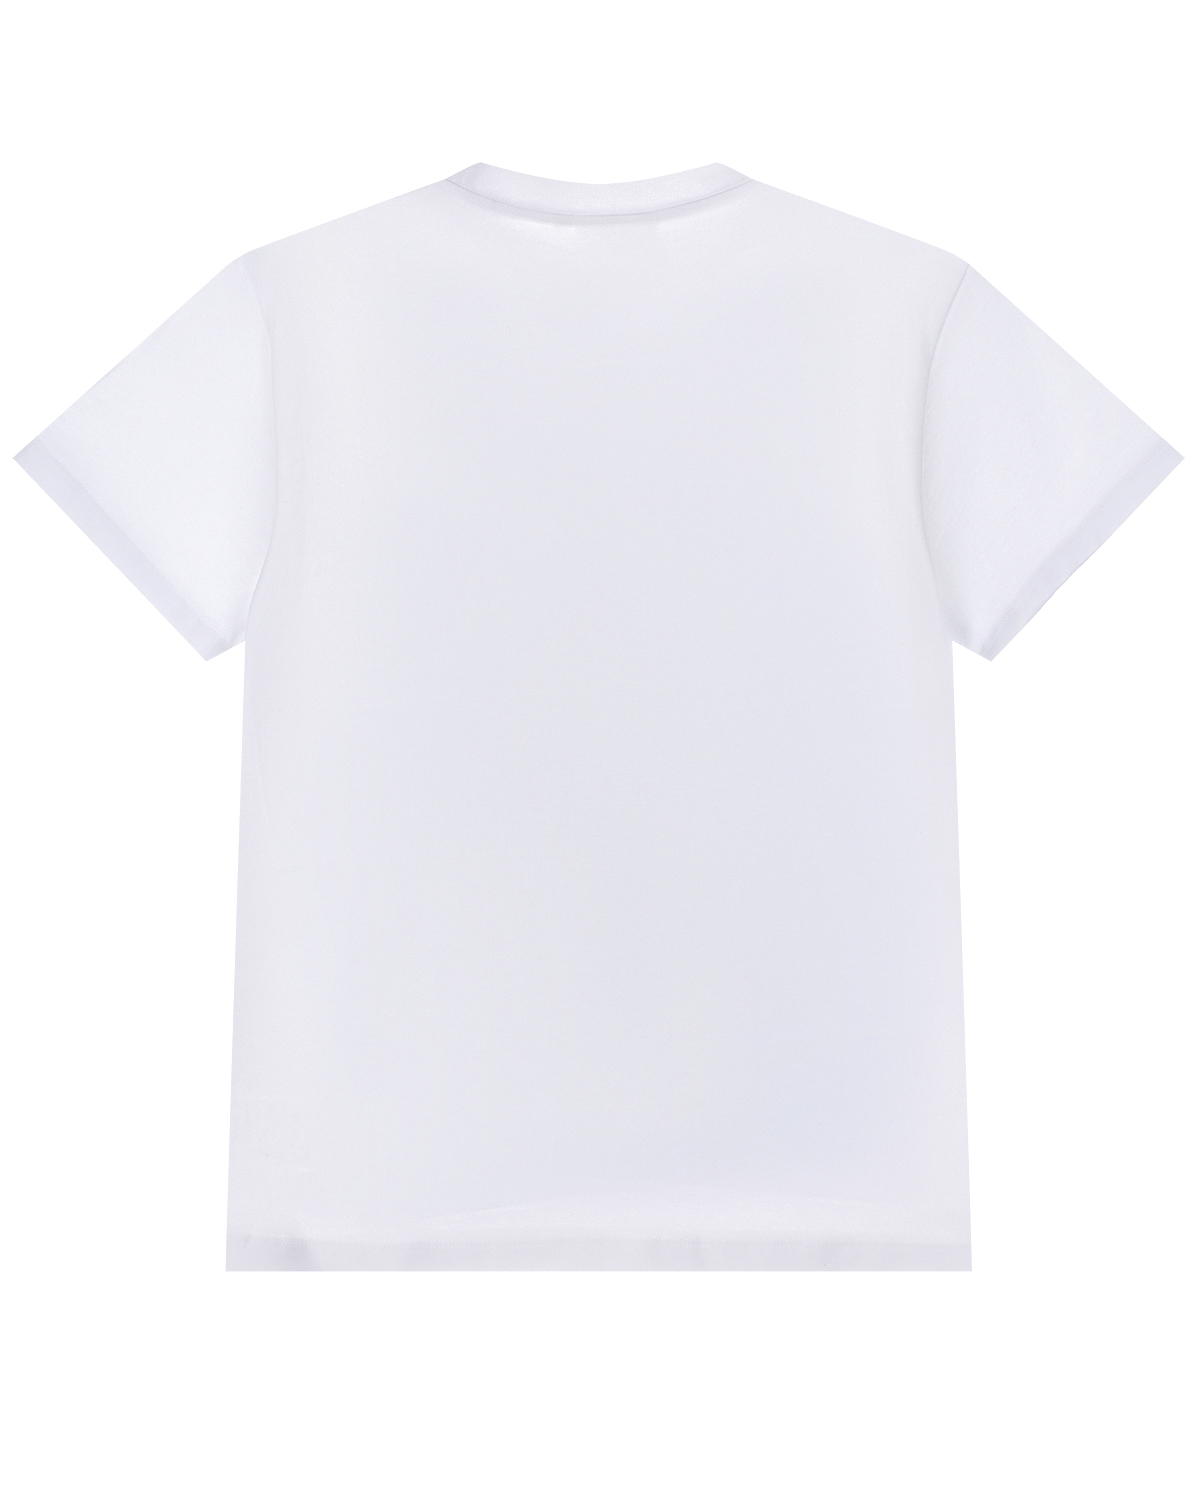 Белая футболка с принтом "Surf Life" Molo детская - фото 2